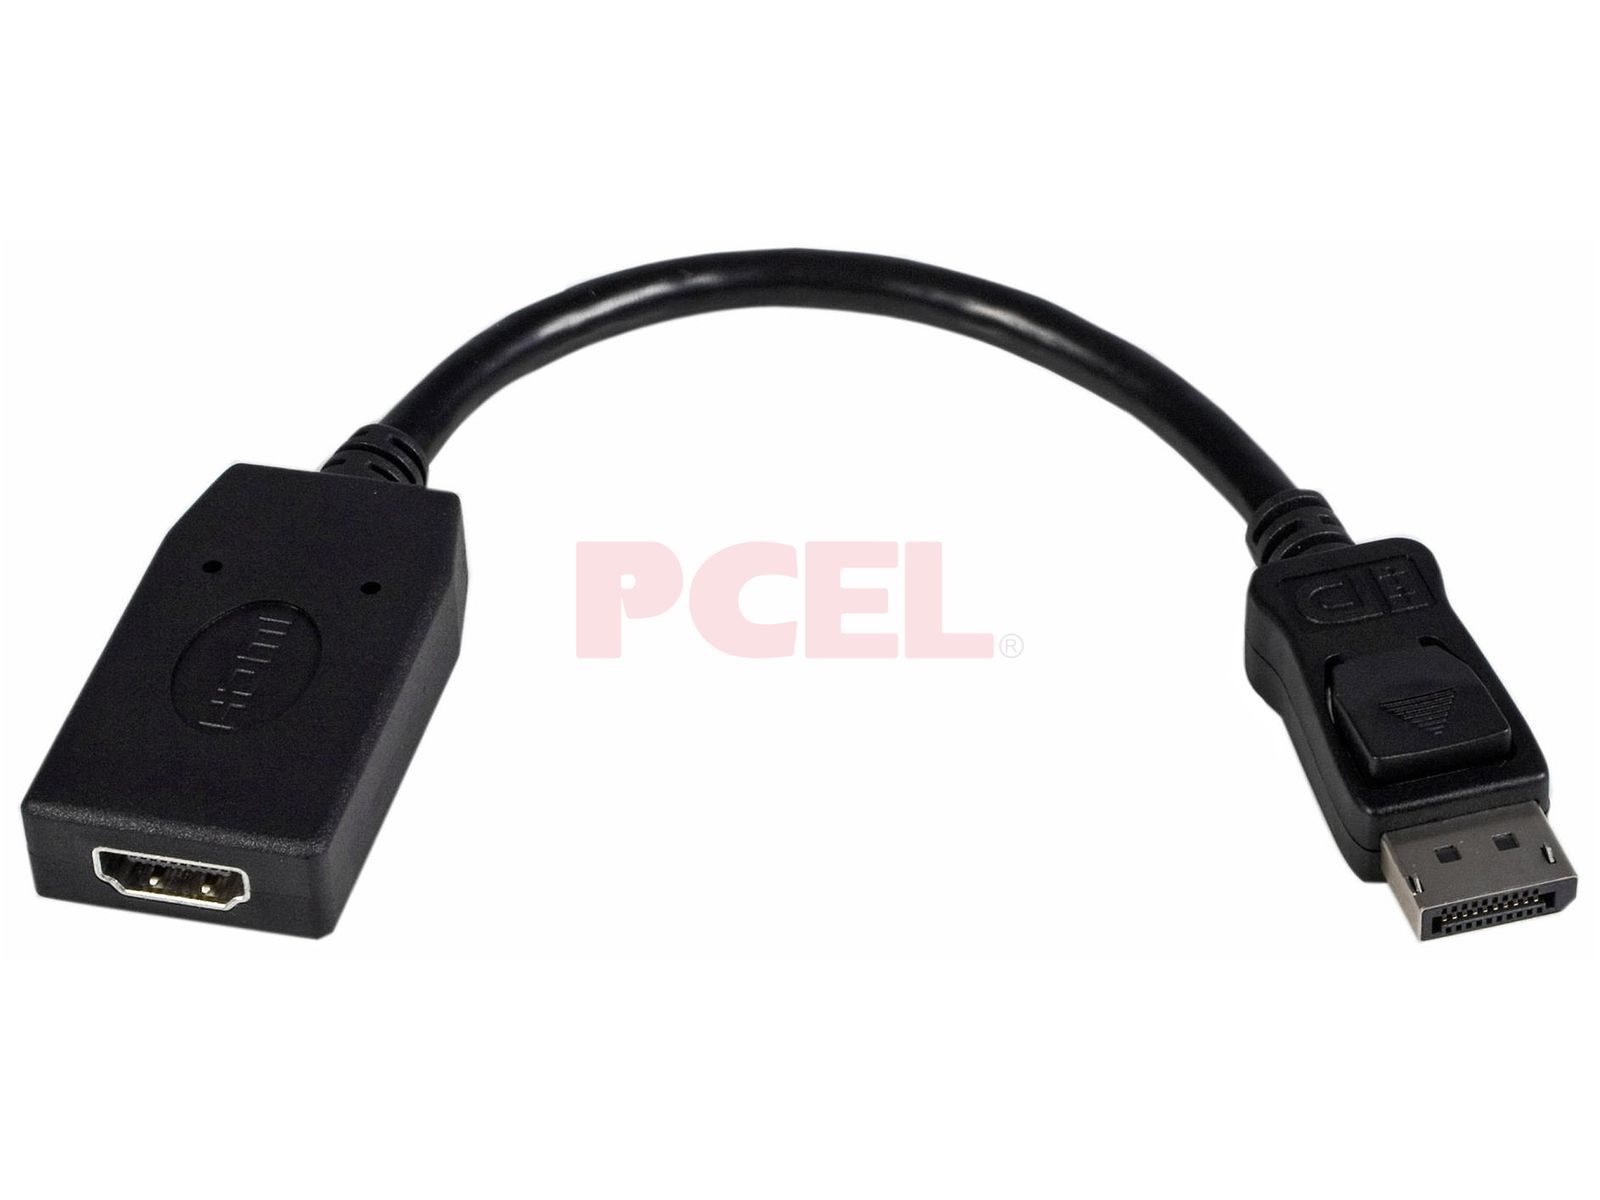 Startech Adaptador DisplayPort a HDMI o VGA hasta 1920x1200 o